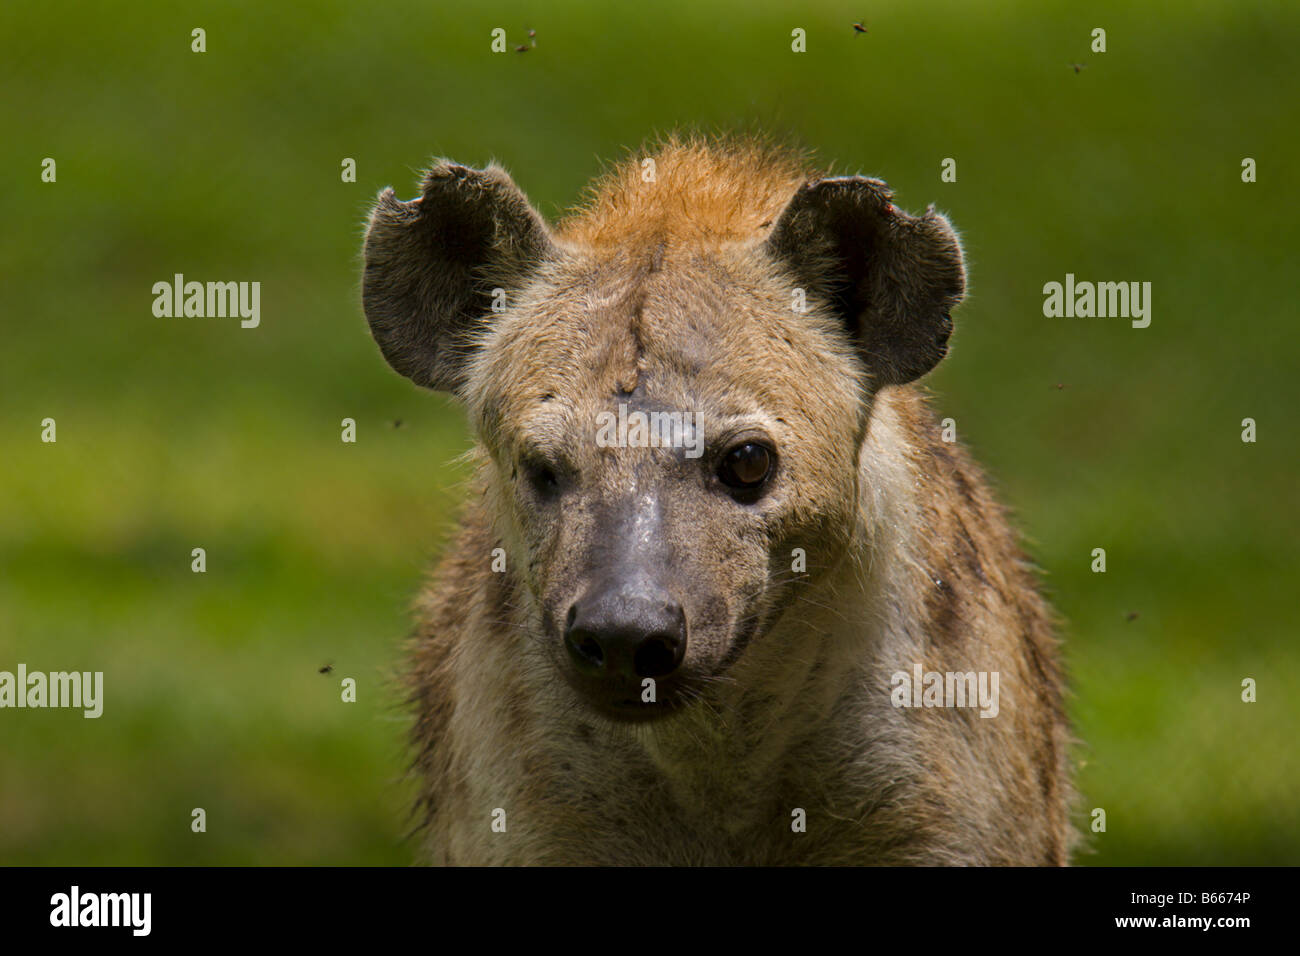 La iena animale selvaggio Uganda africa Foto Stock